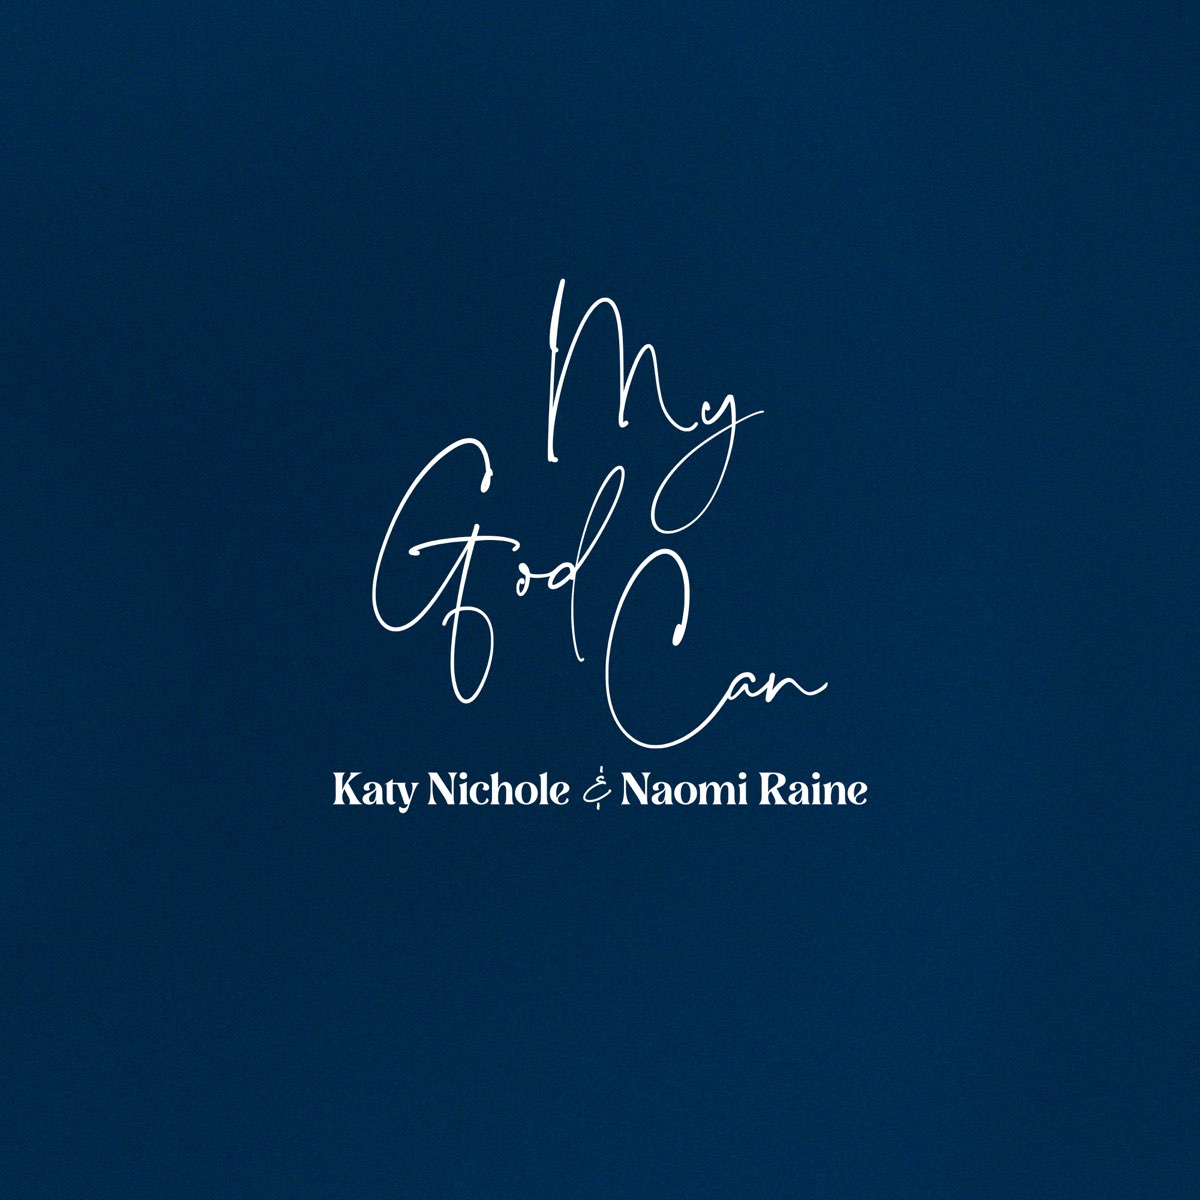 ‎My God Can - Single — álbum de Katy Nichole & Naomi Raine — Apple Music